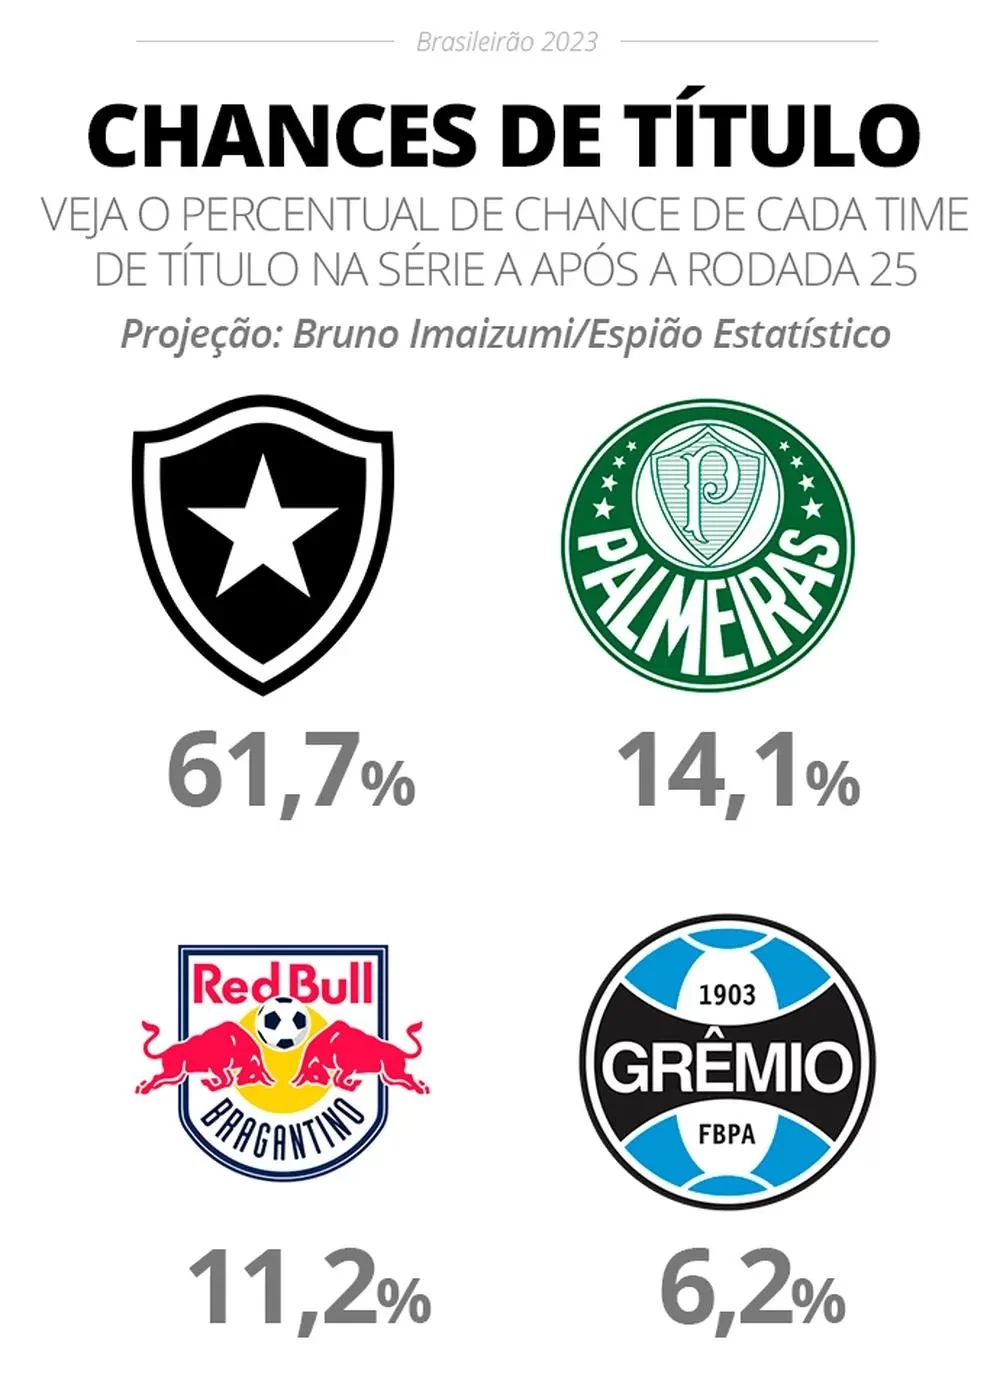 Percentual de chances de cada time para o Brasileirão